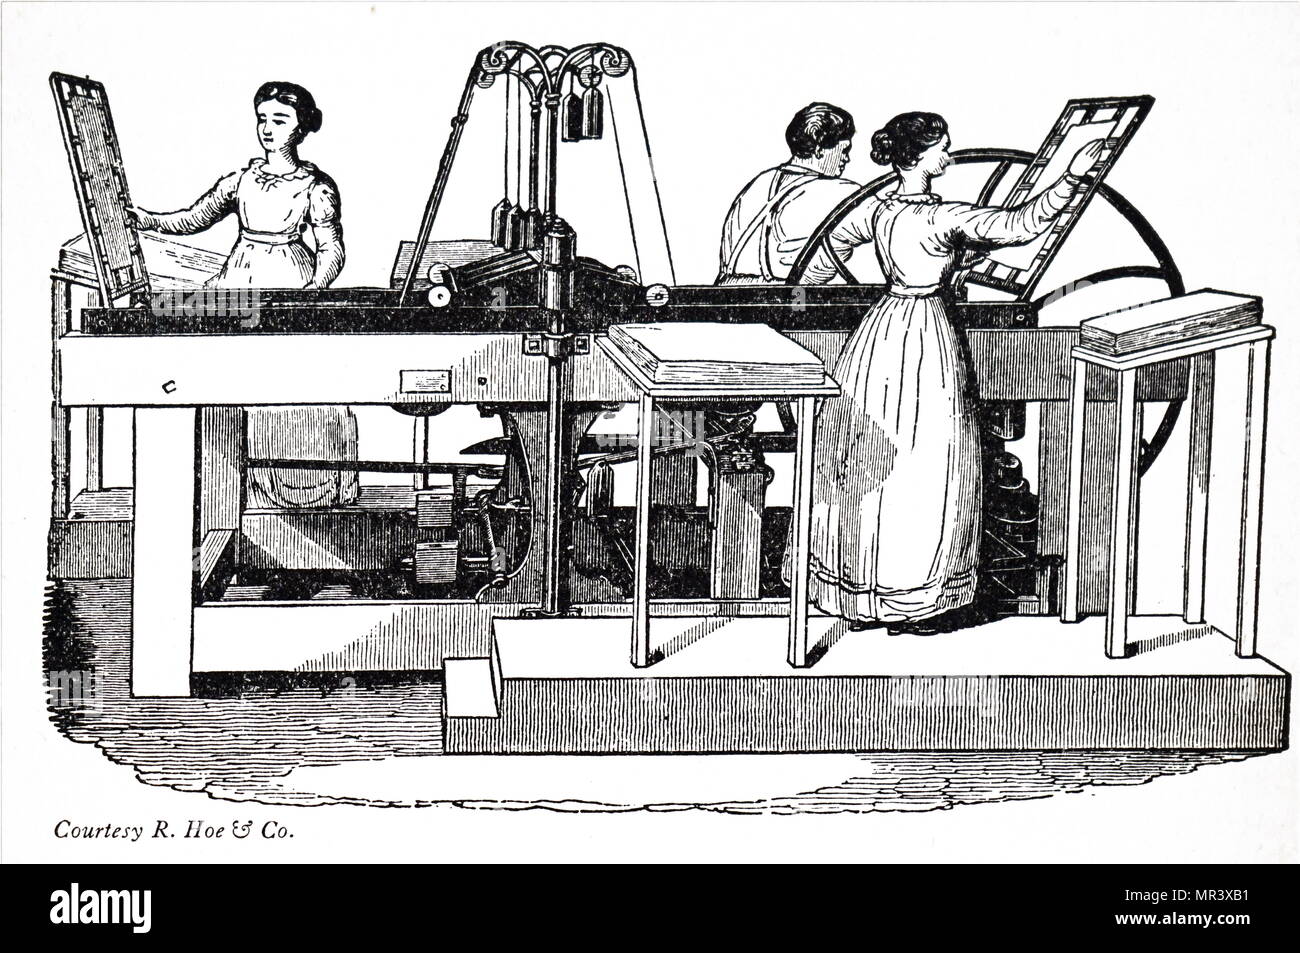 Ilustración mostrando una Treadwell prensa. Fecha del siglo XIX Foto de stock